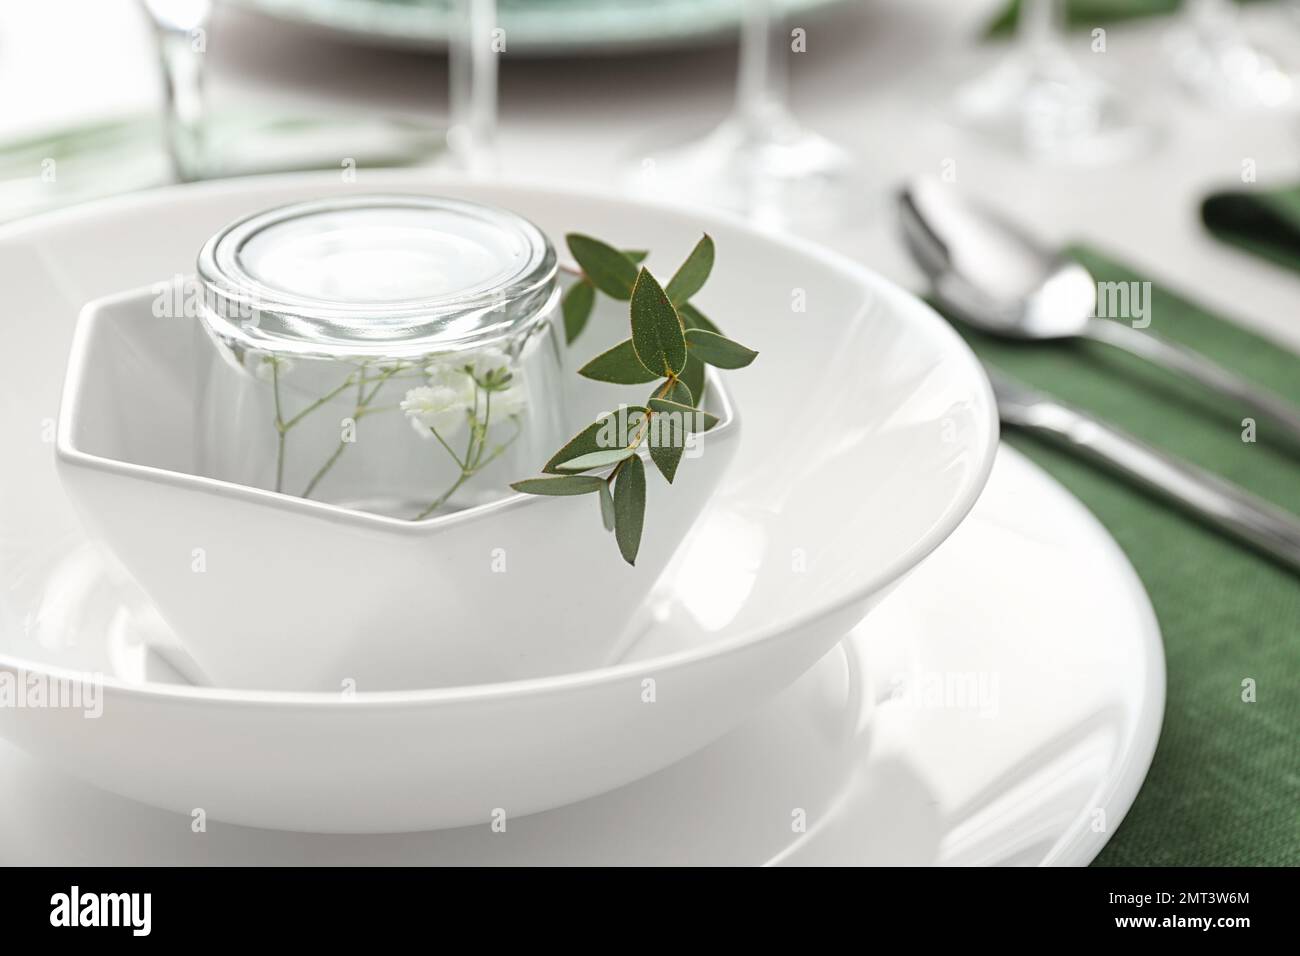 Stilvolles Geschirr mit grünen Blättern auf dem Tisch, Nahaufnahme.  Festliches Ambiente Stockfotografie - Alamy